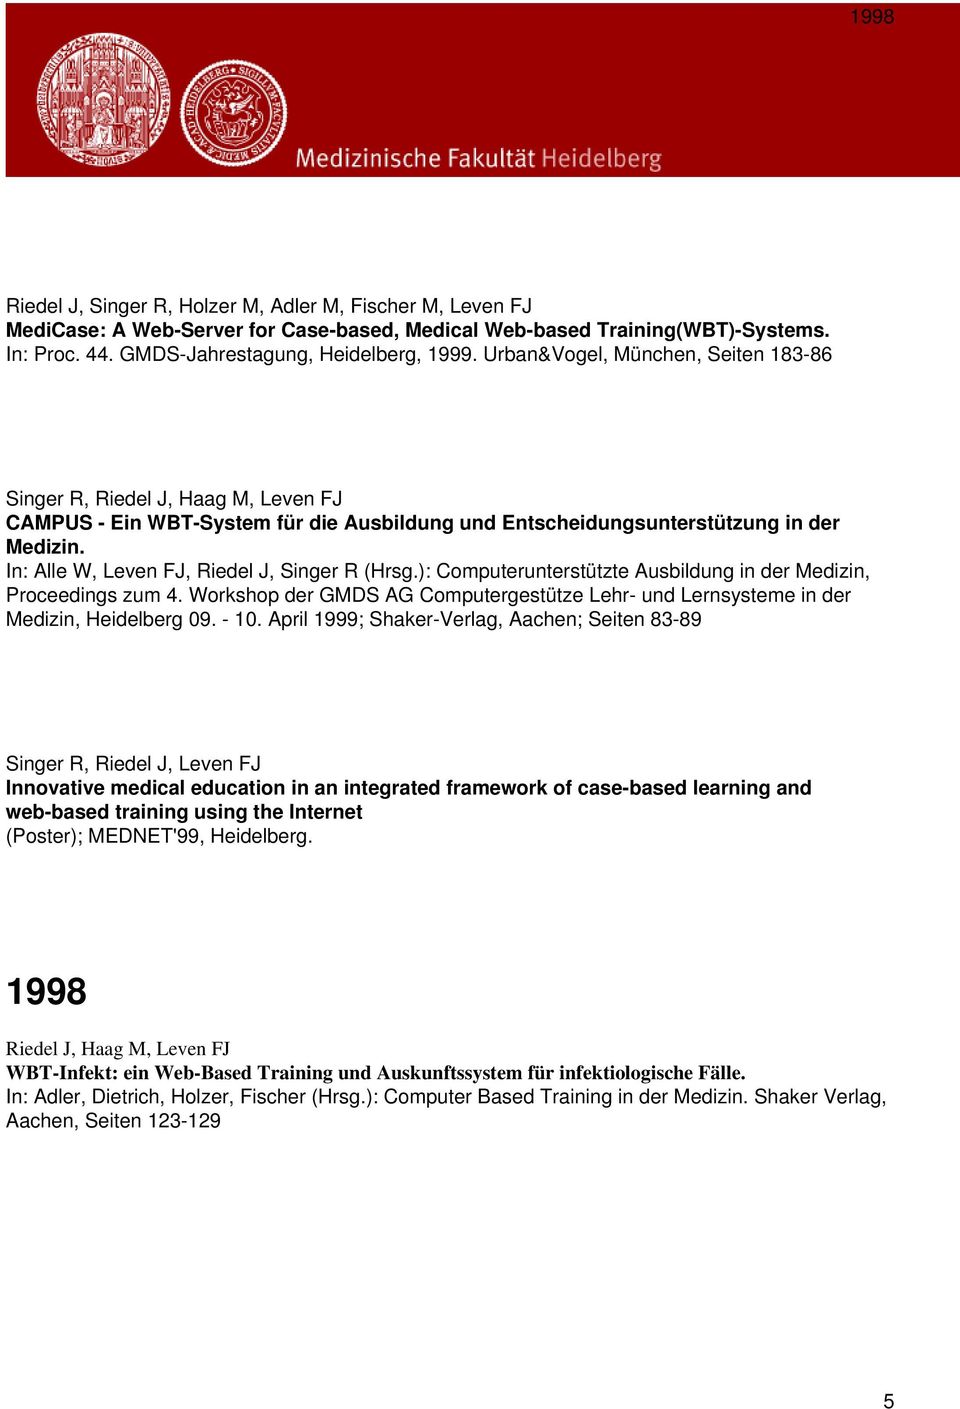 In: Alle W, Leven FJ, Riedel J, Singer R (Hrsg.): Computerunterstützte Ausbildung in der Medizin, Proceedings zum 4.